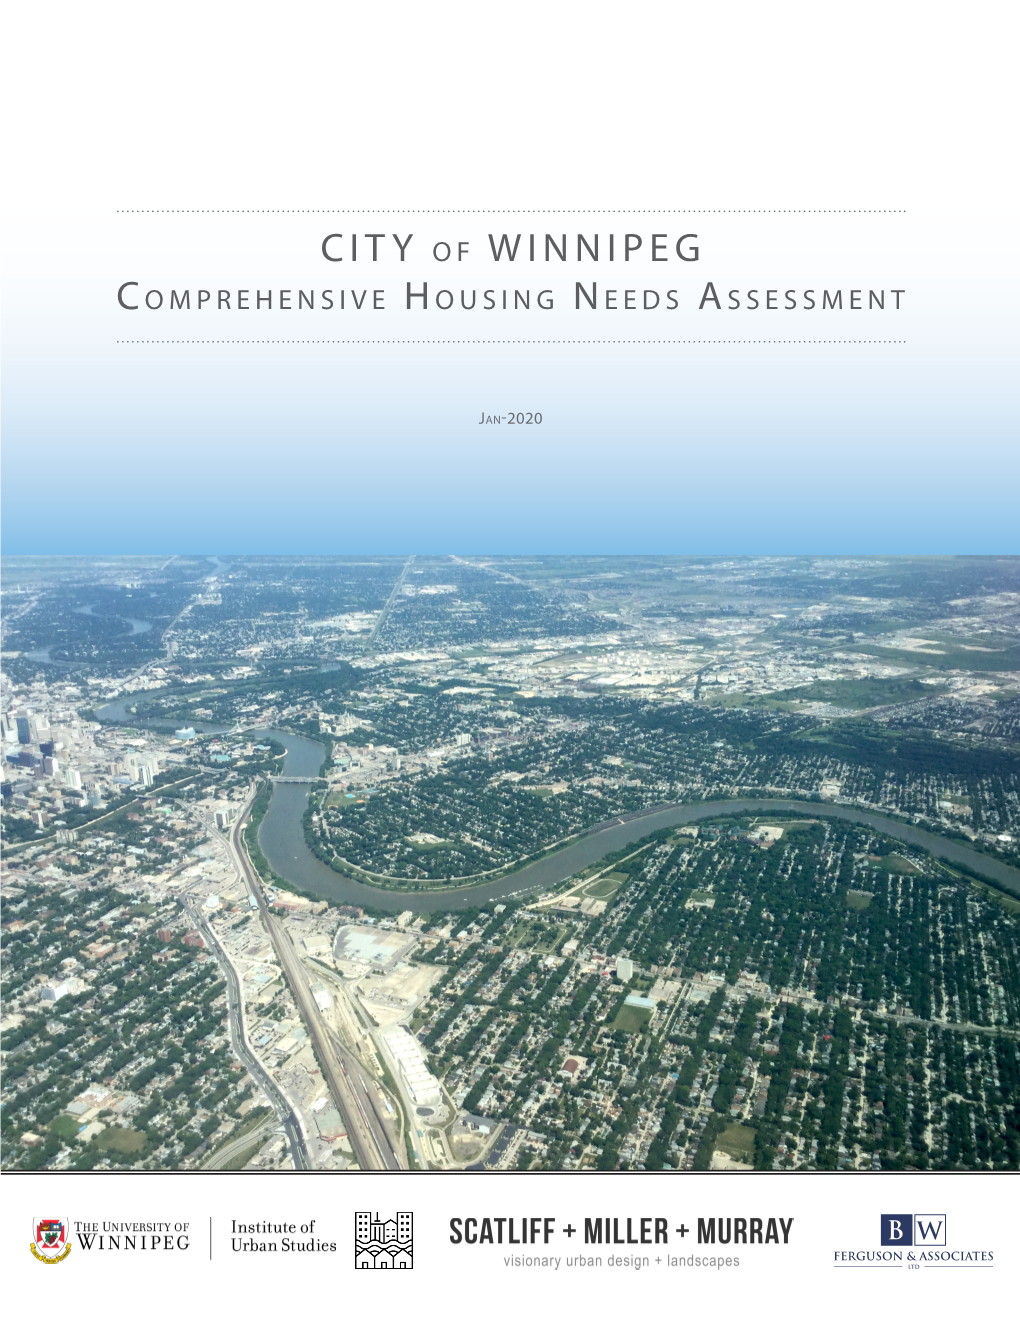 City of Winnipeg Comprehensive Housing Needs Assessment